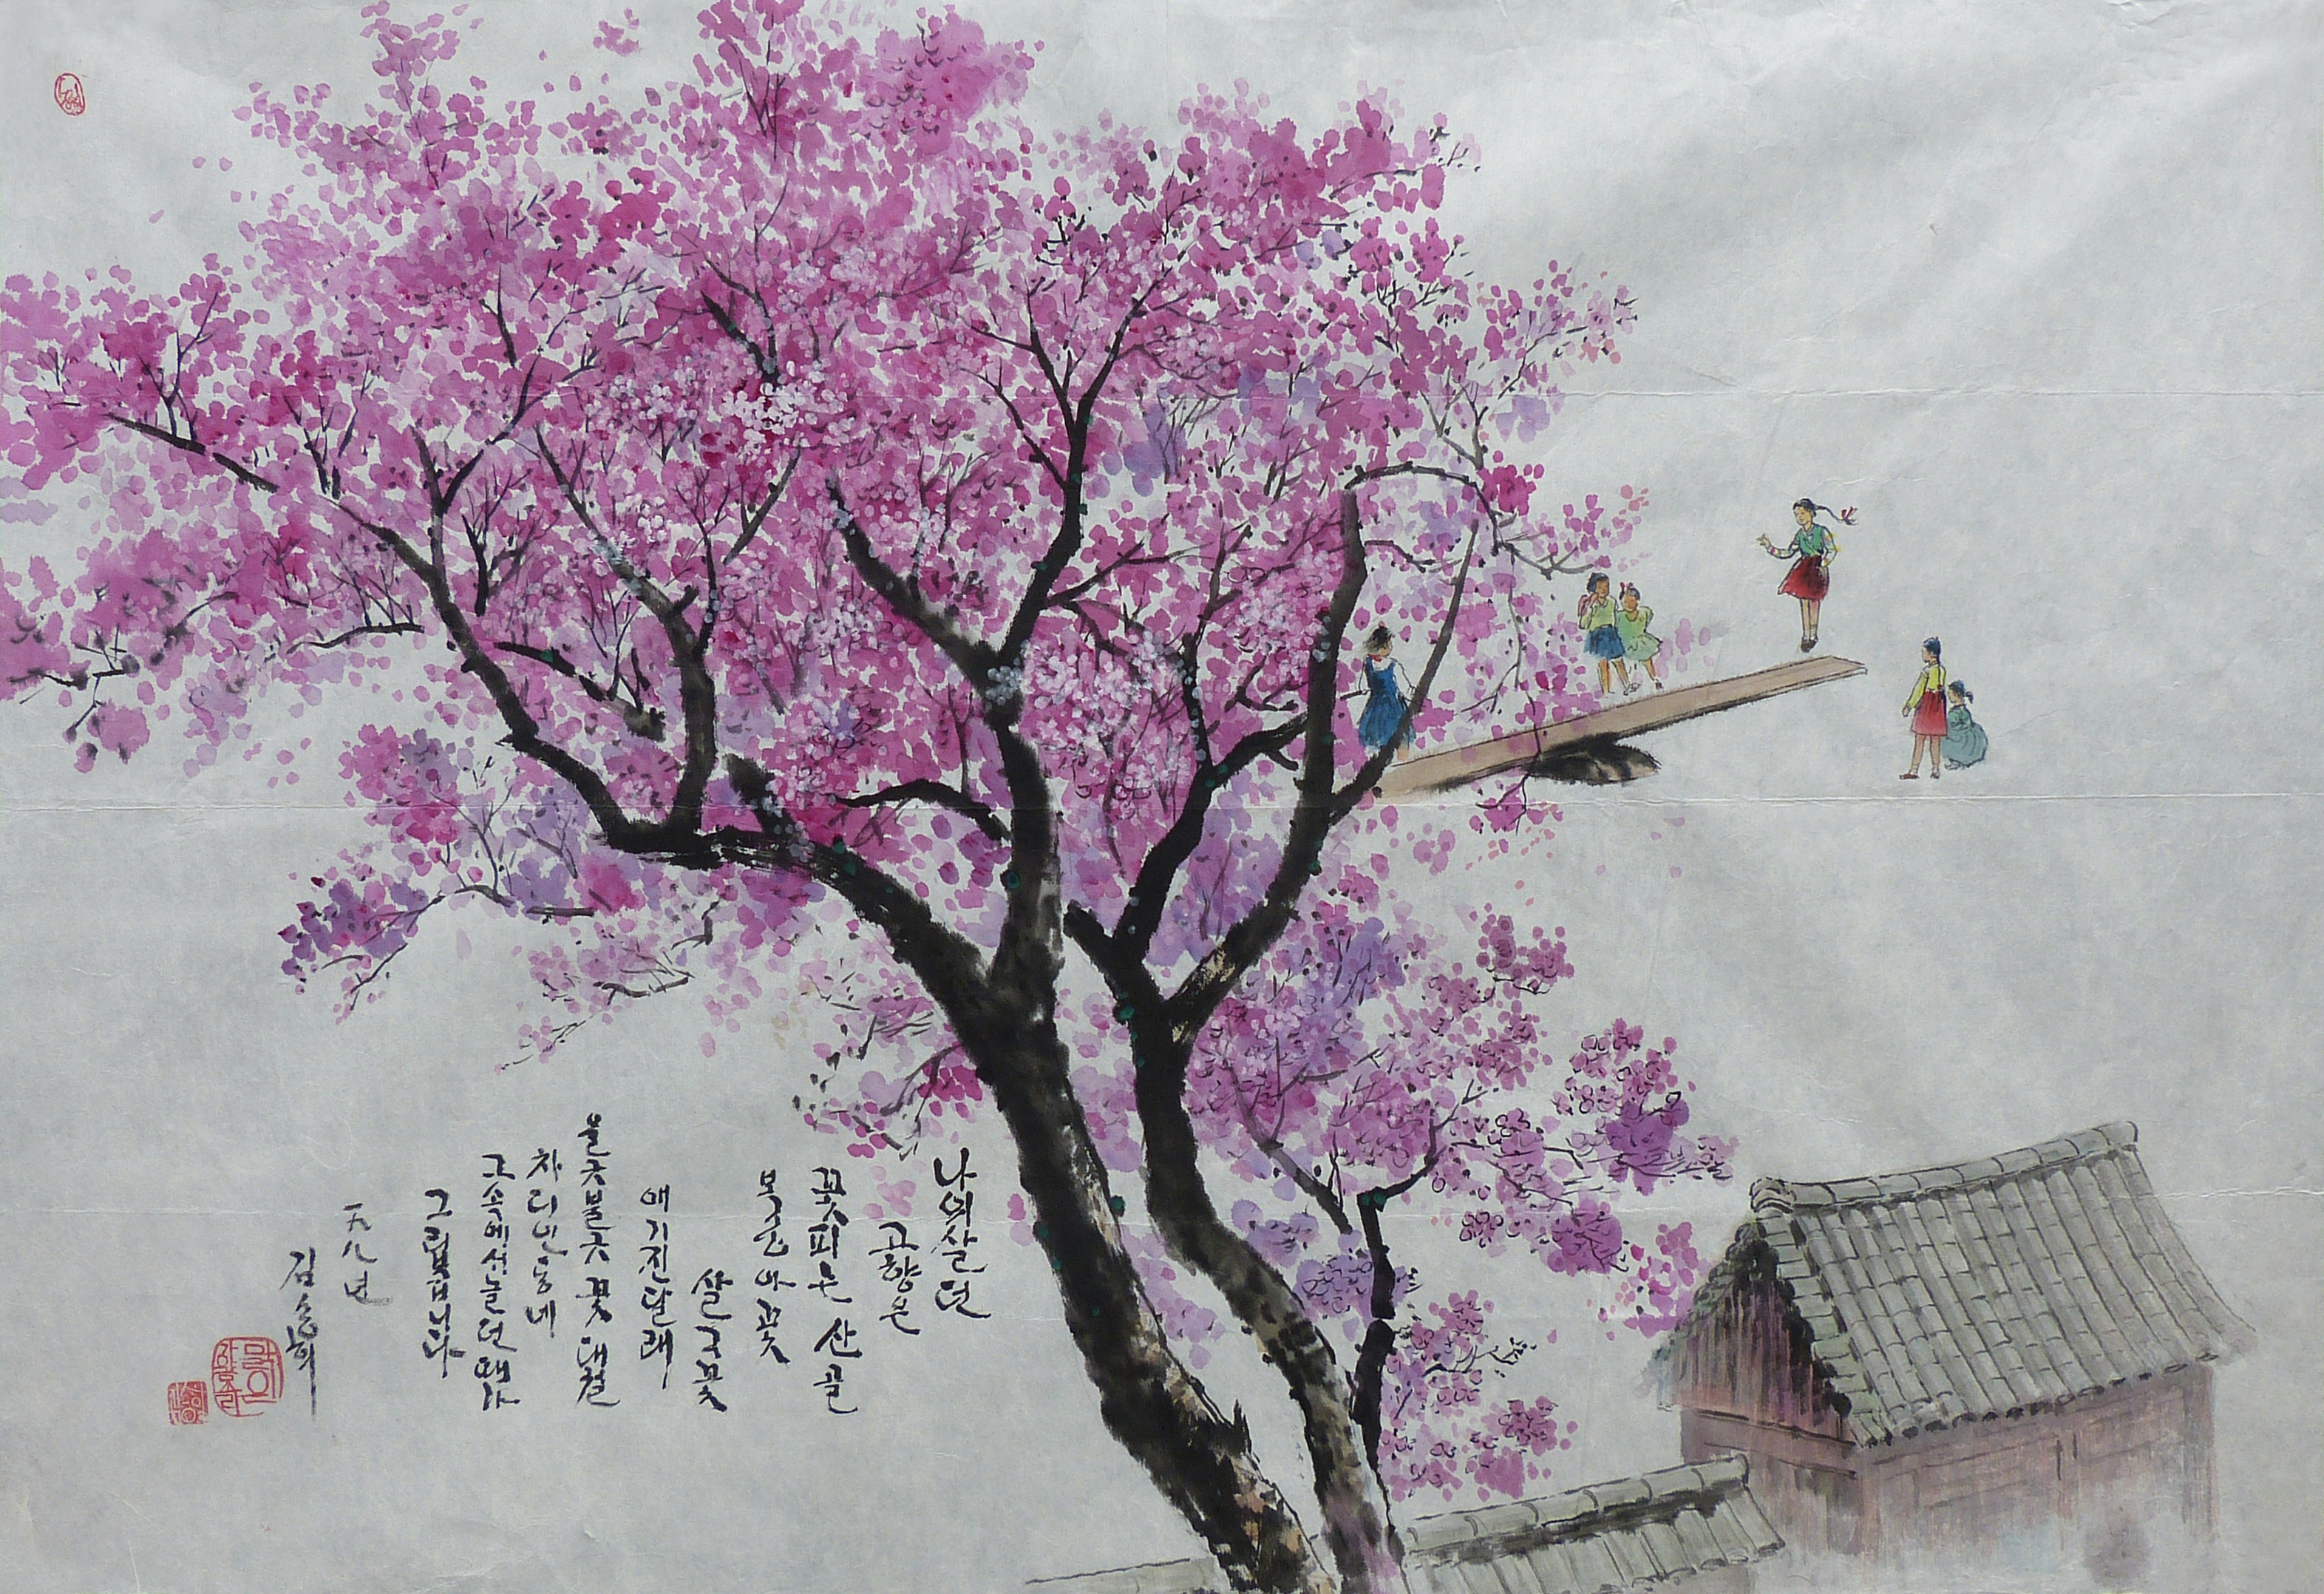 【朝鲜水墨画】粉红色的回忆